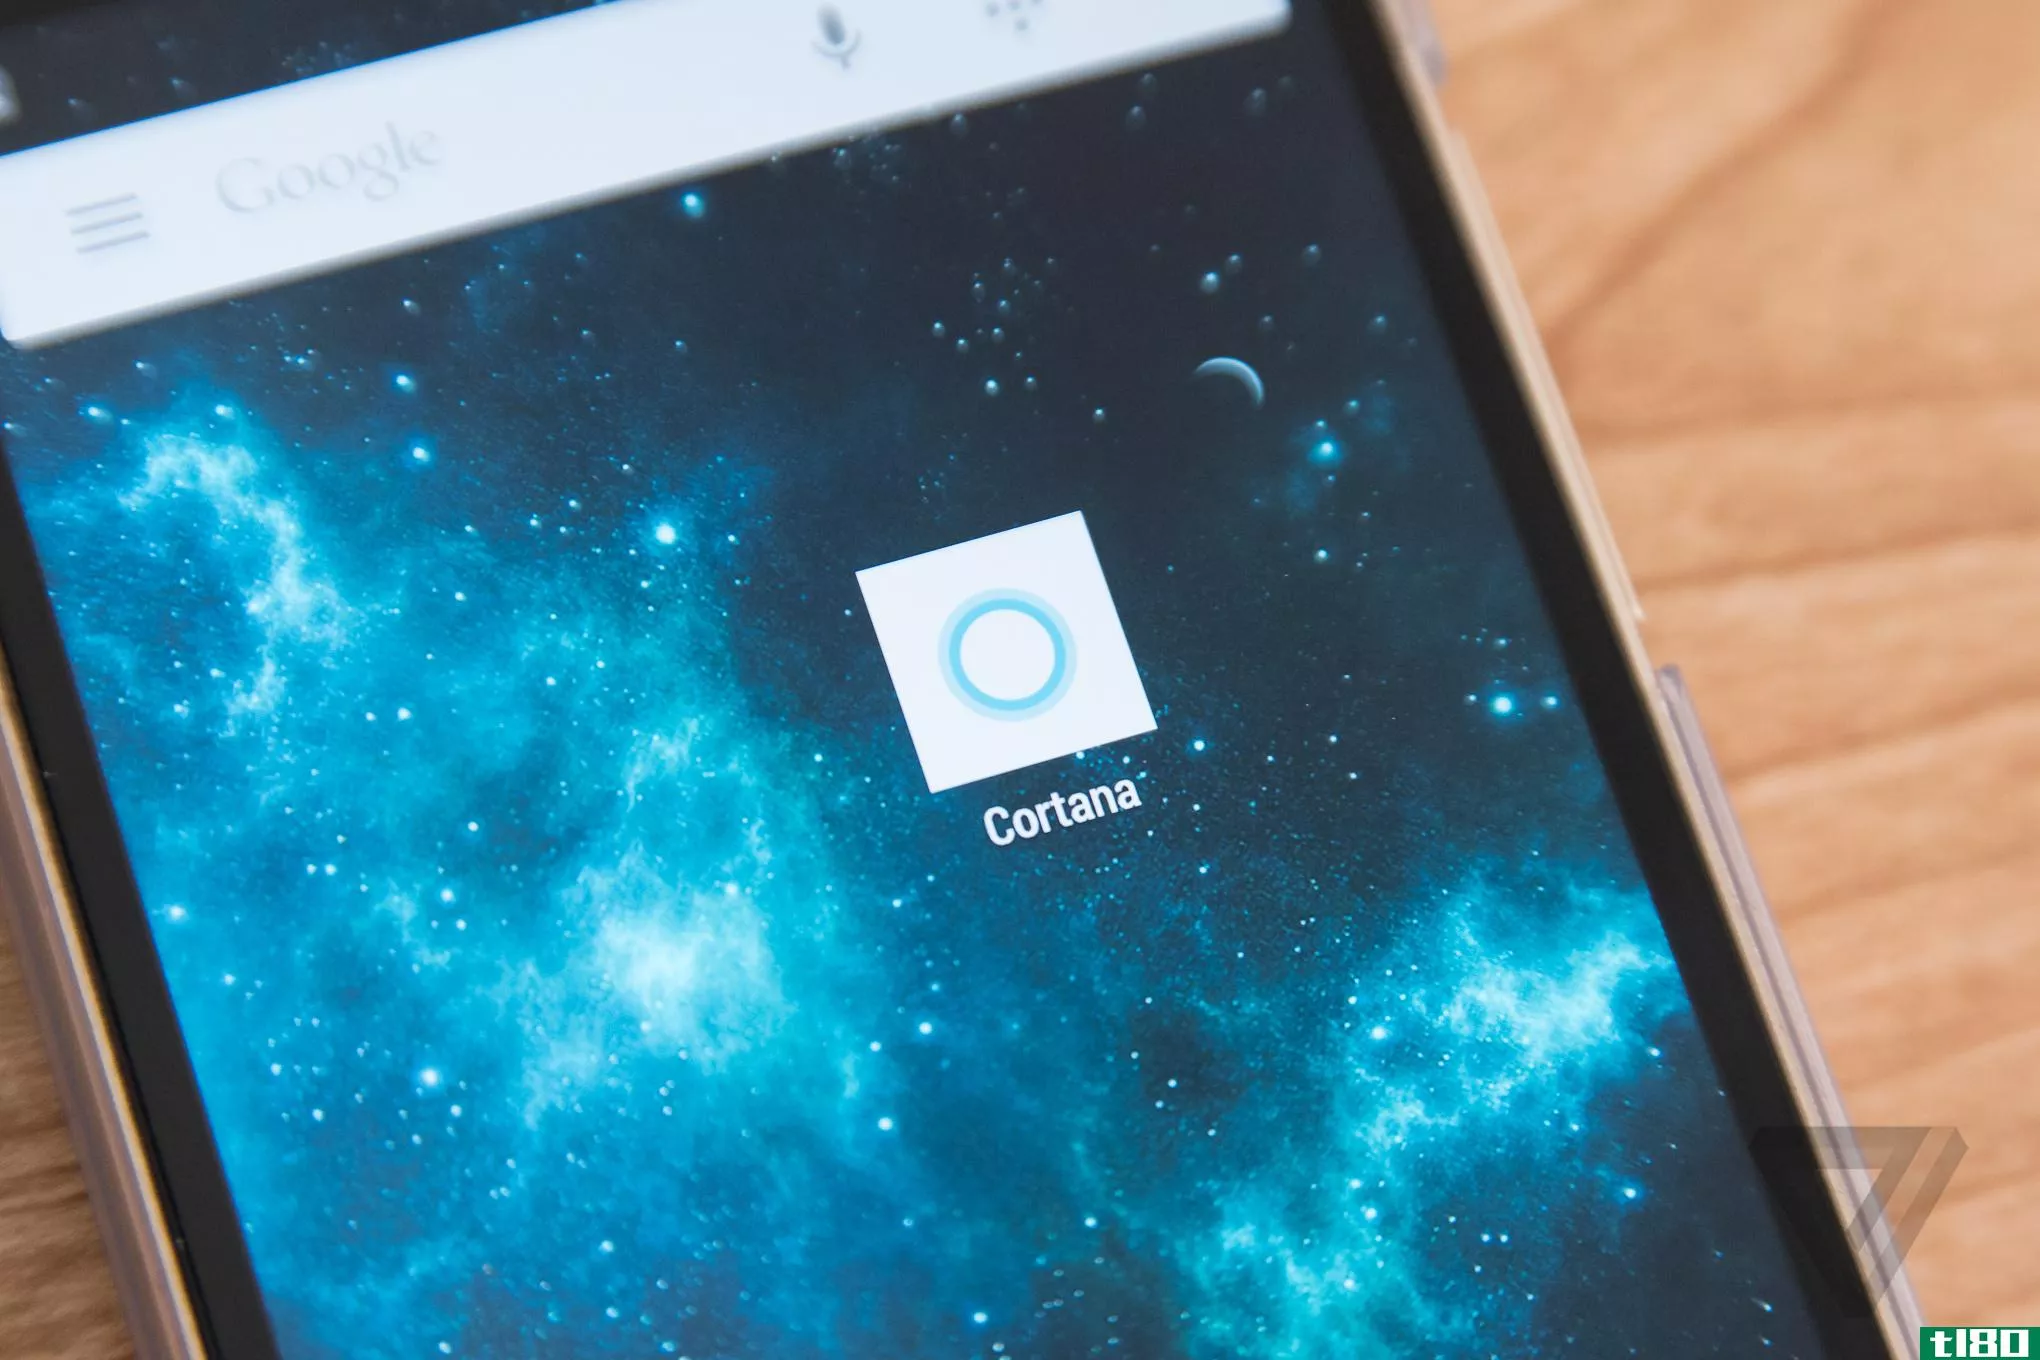 微软的cortana将与下一版本的cyanogen操作系统“深度集成”